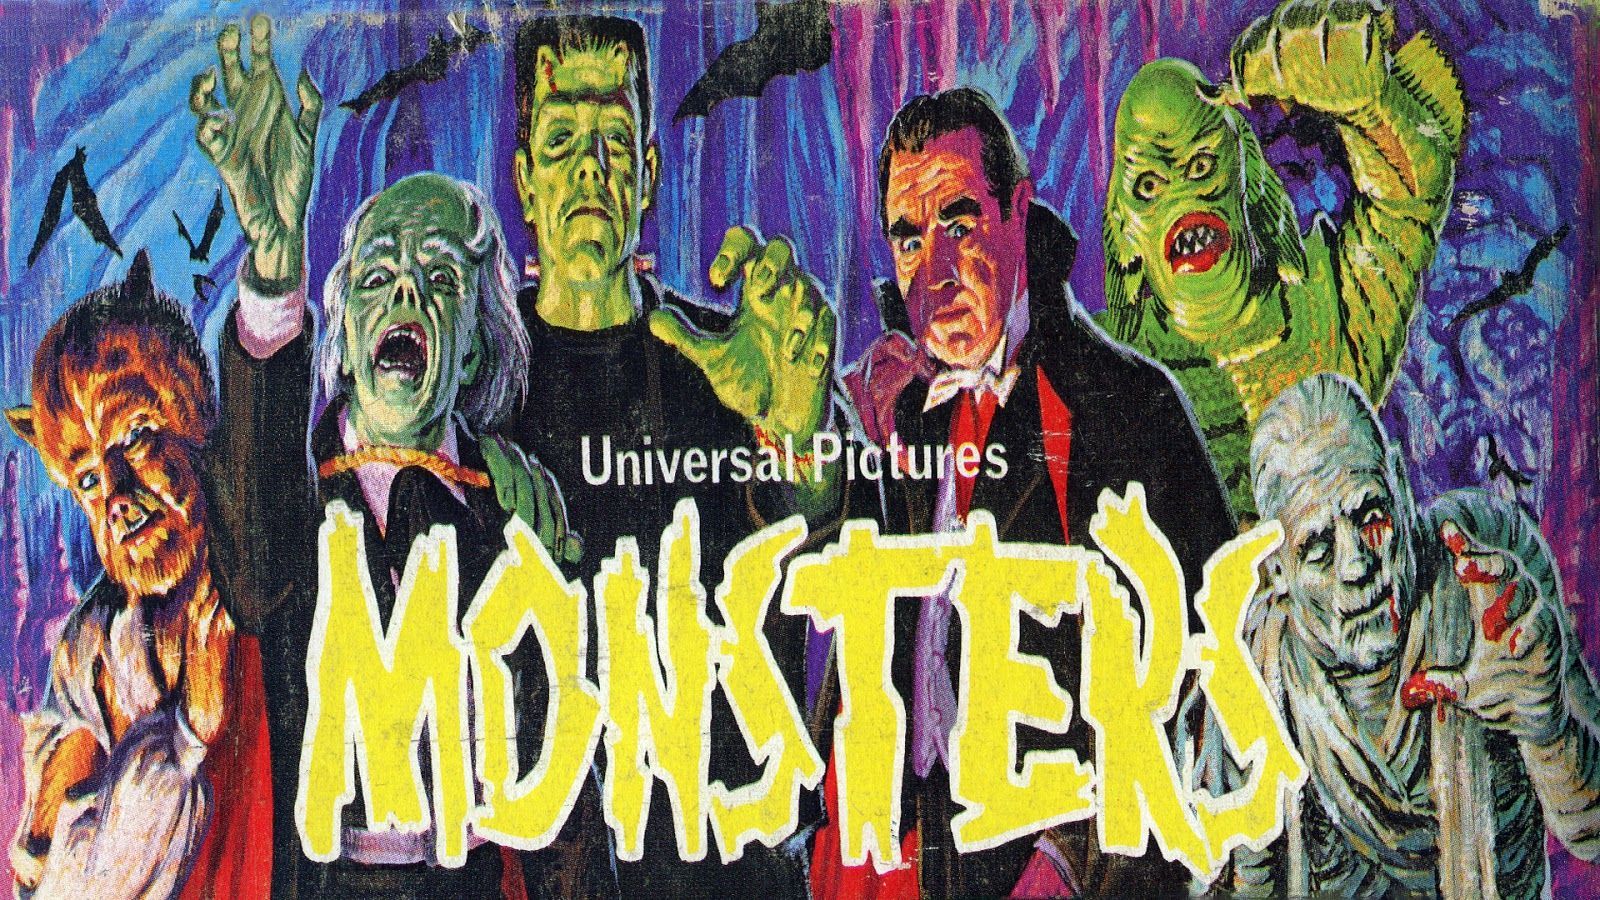 Cartoon Halloween Monsters Wallpapers